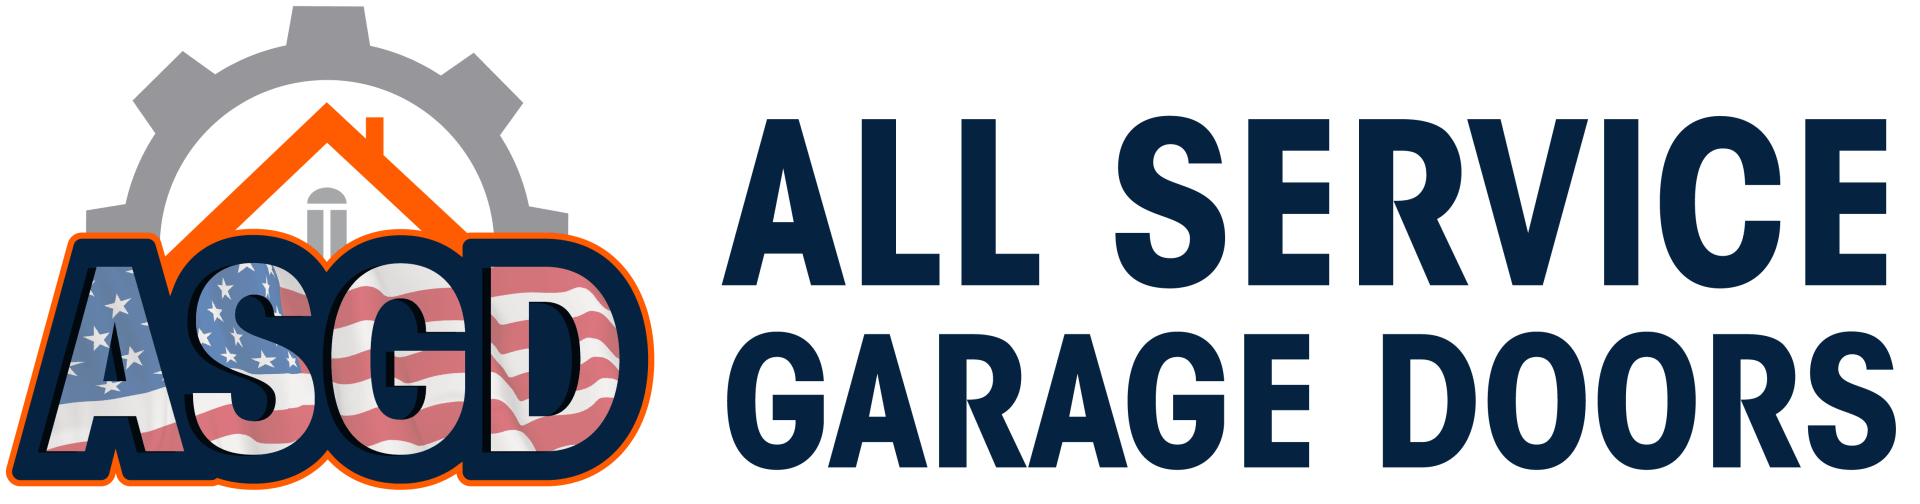 All Service Garage Doors